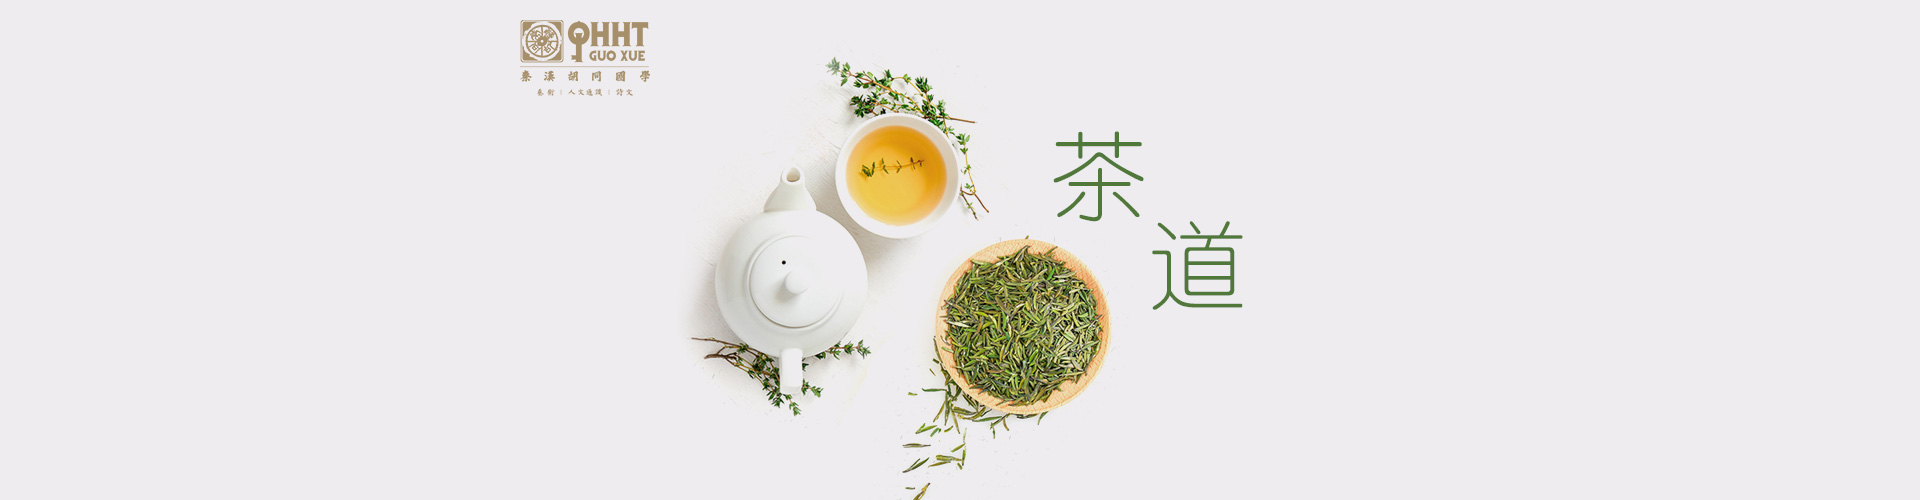 上海秦汉合同茶道课程